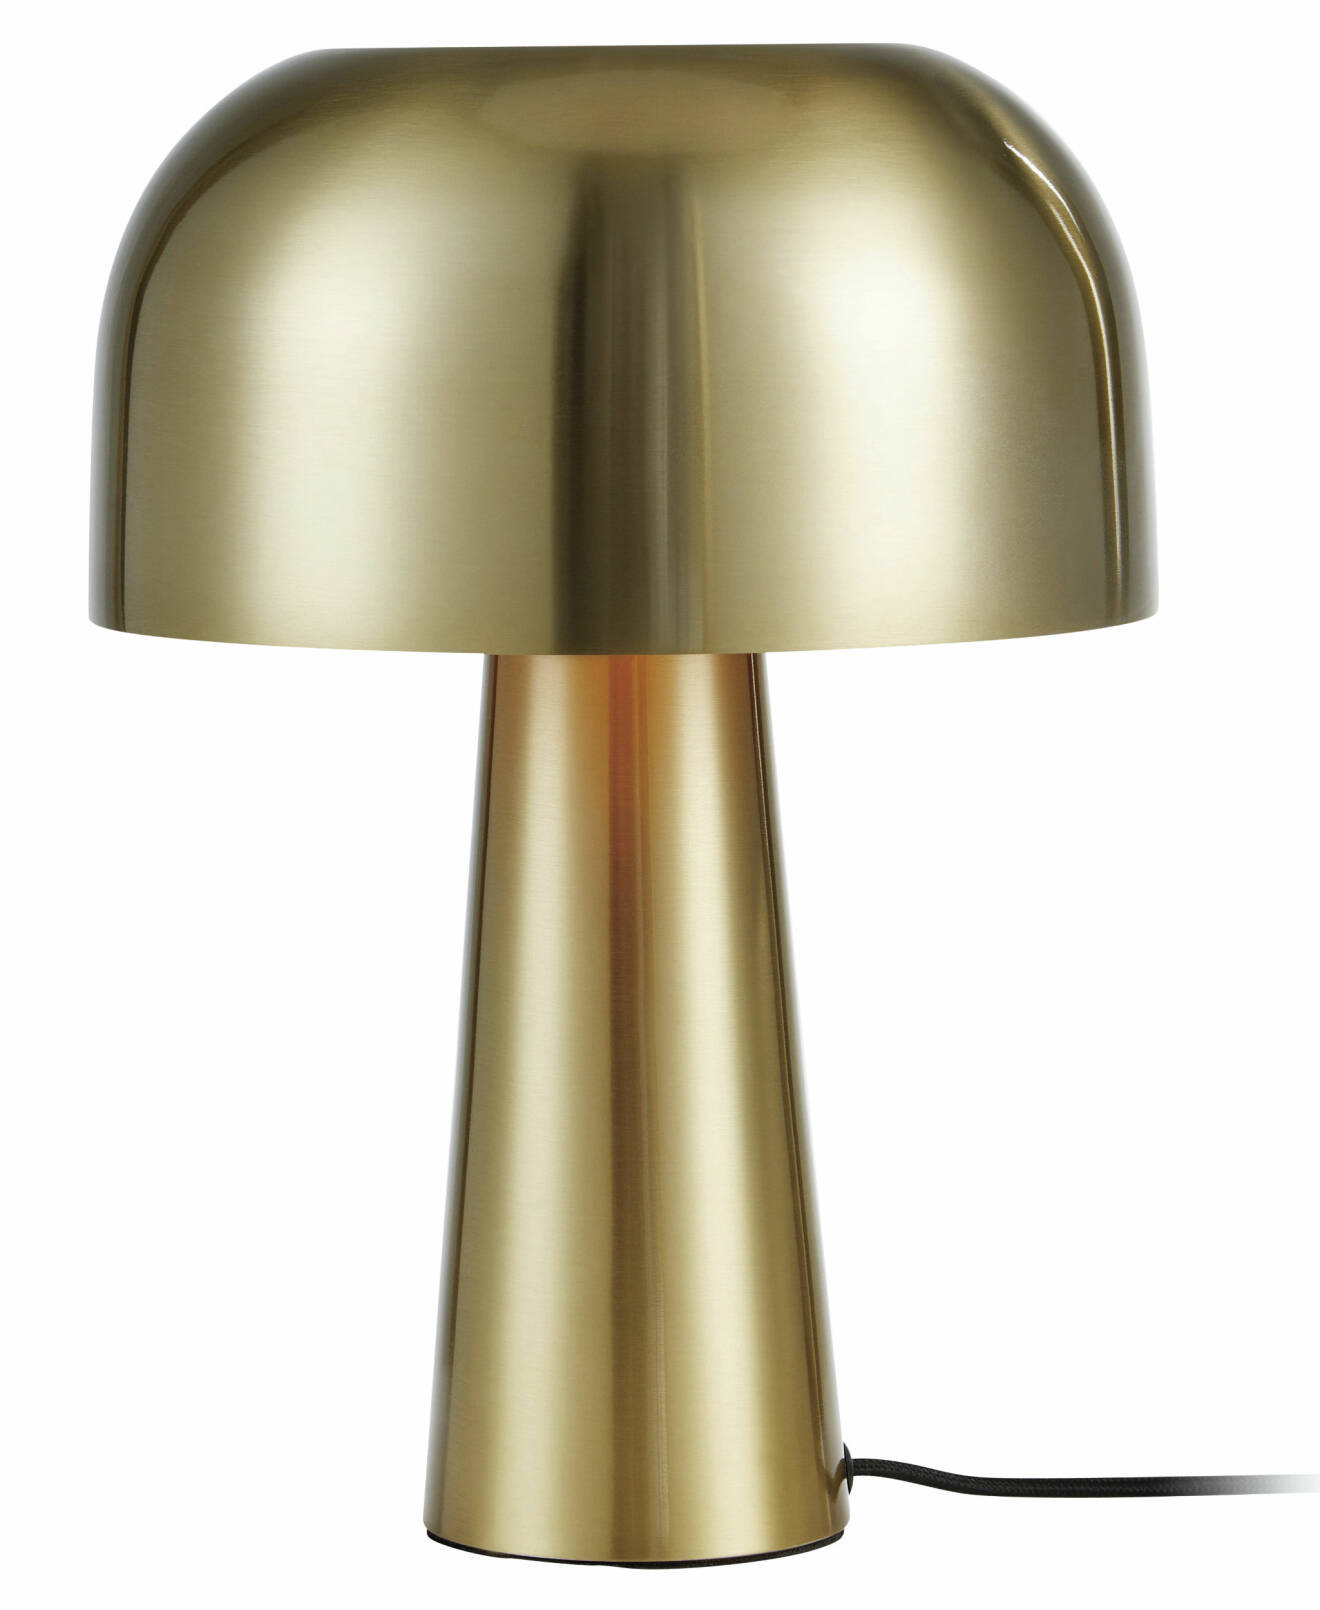 Coola lampan Blanca i guldfärgad metall från Markslöjd.